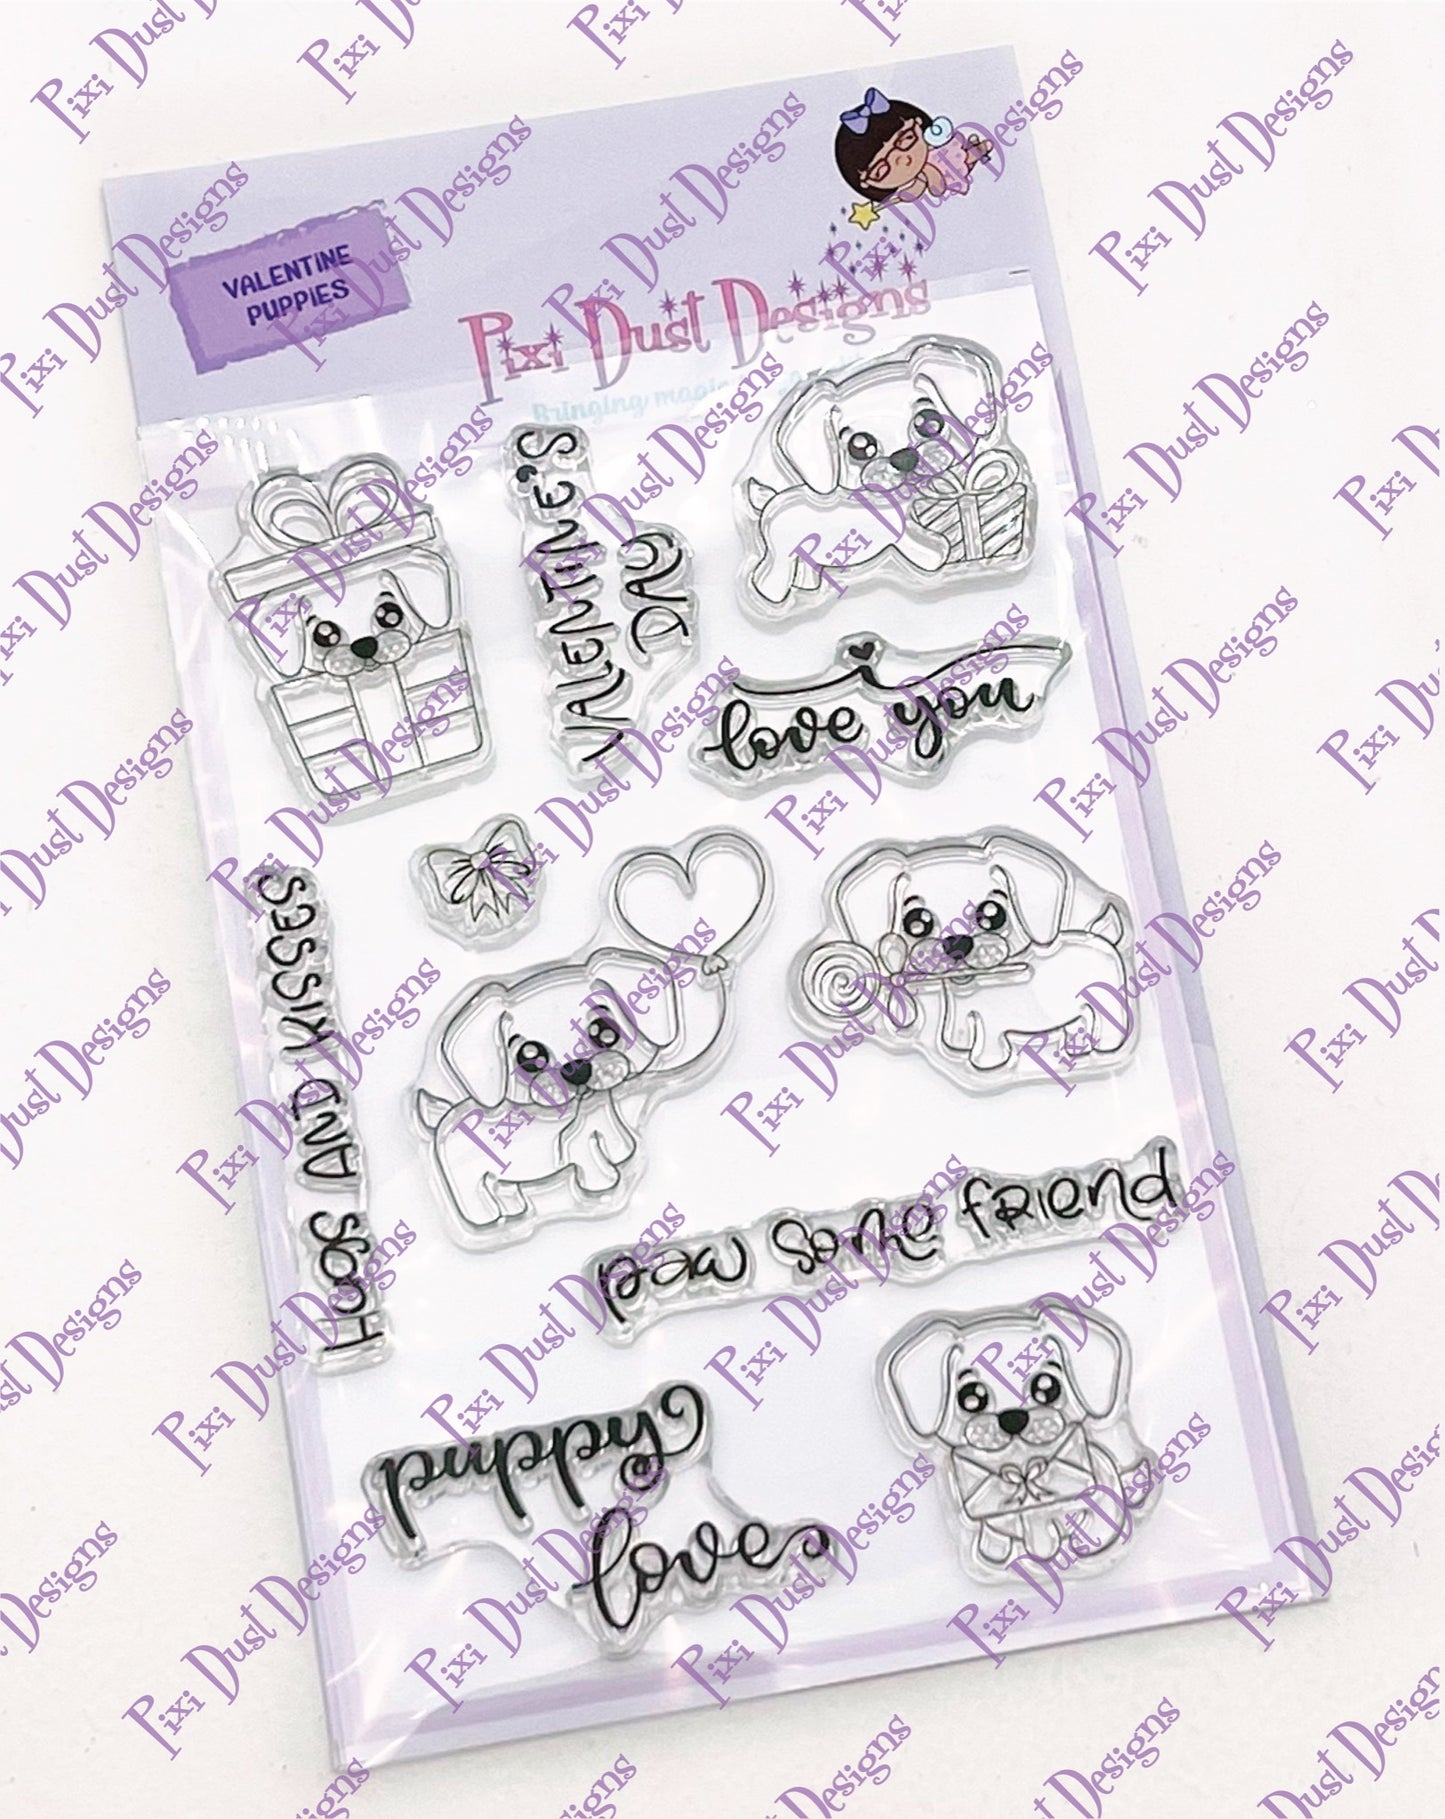 Valentine Puppies Stamp Set